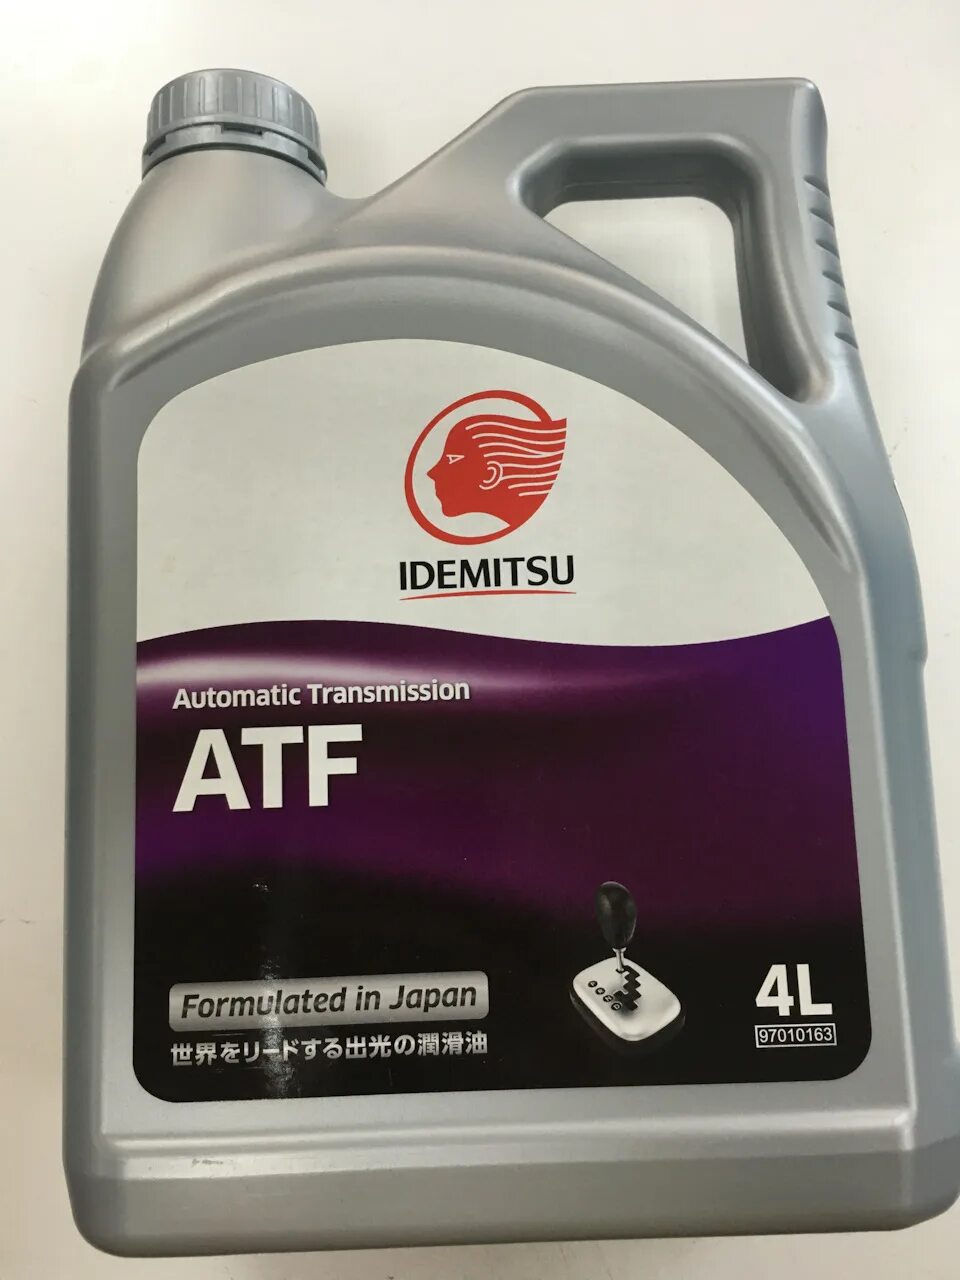 Idemitsu ATF 4л 30450248746. Idemitsu ATF 2 литра. Idemitsu ATF 3 литра. ATF Idemitsu 20 литров.